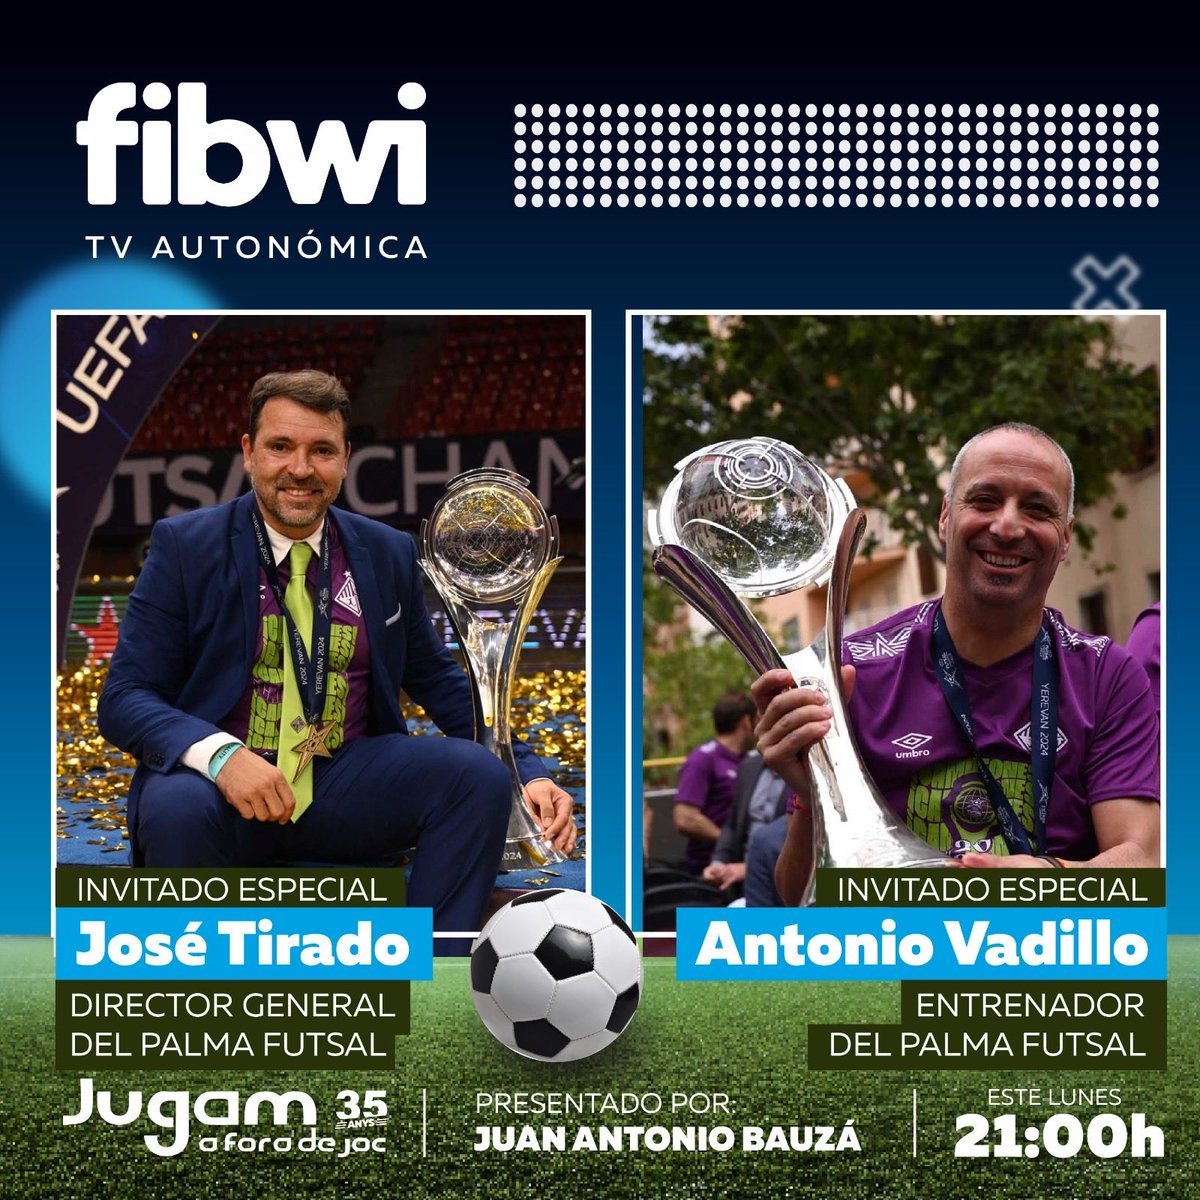 Este lunes ⁦@AVadillo4⁩ ,Jose Tirado y las dos champions estarán en nuestro plato de ⁦@fibwiTV⁩ .Duela a quien duela 35 años siendo los líderes de la información deportiva con ⁦@AirEuropa⁩